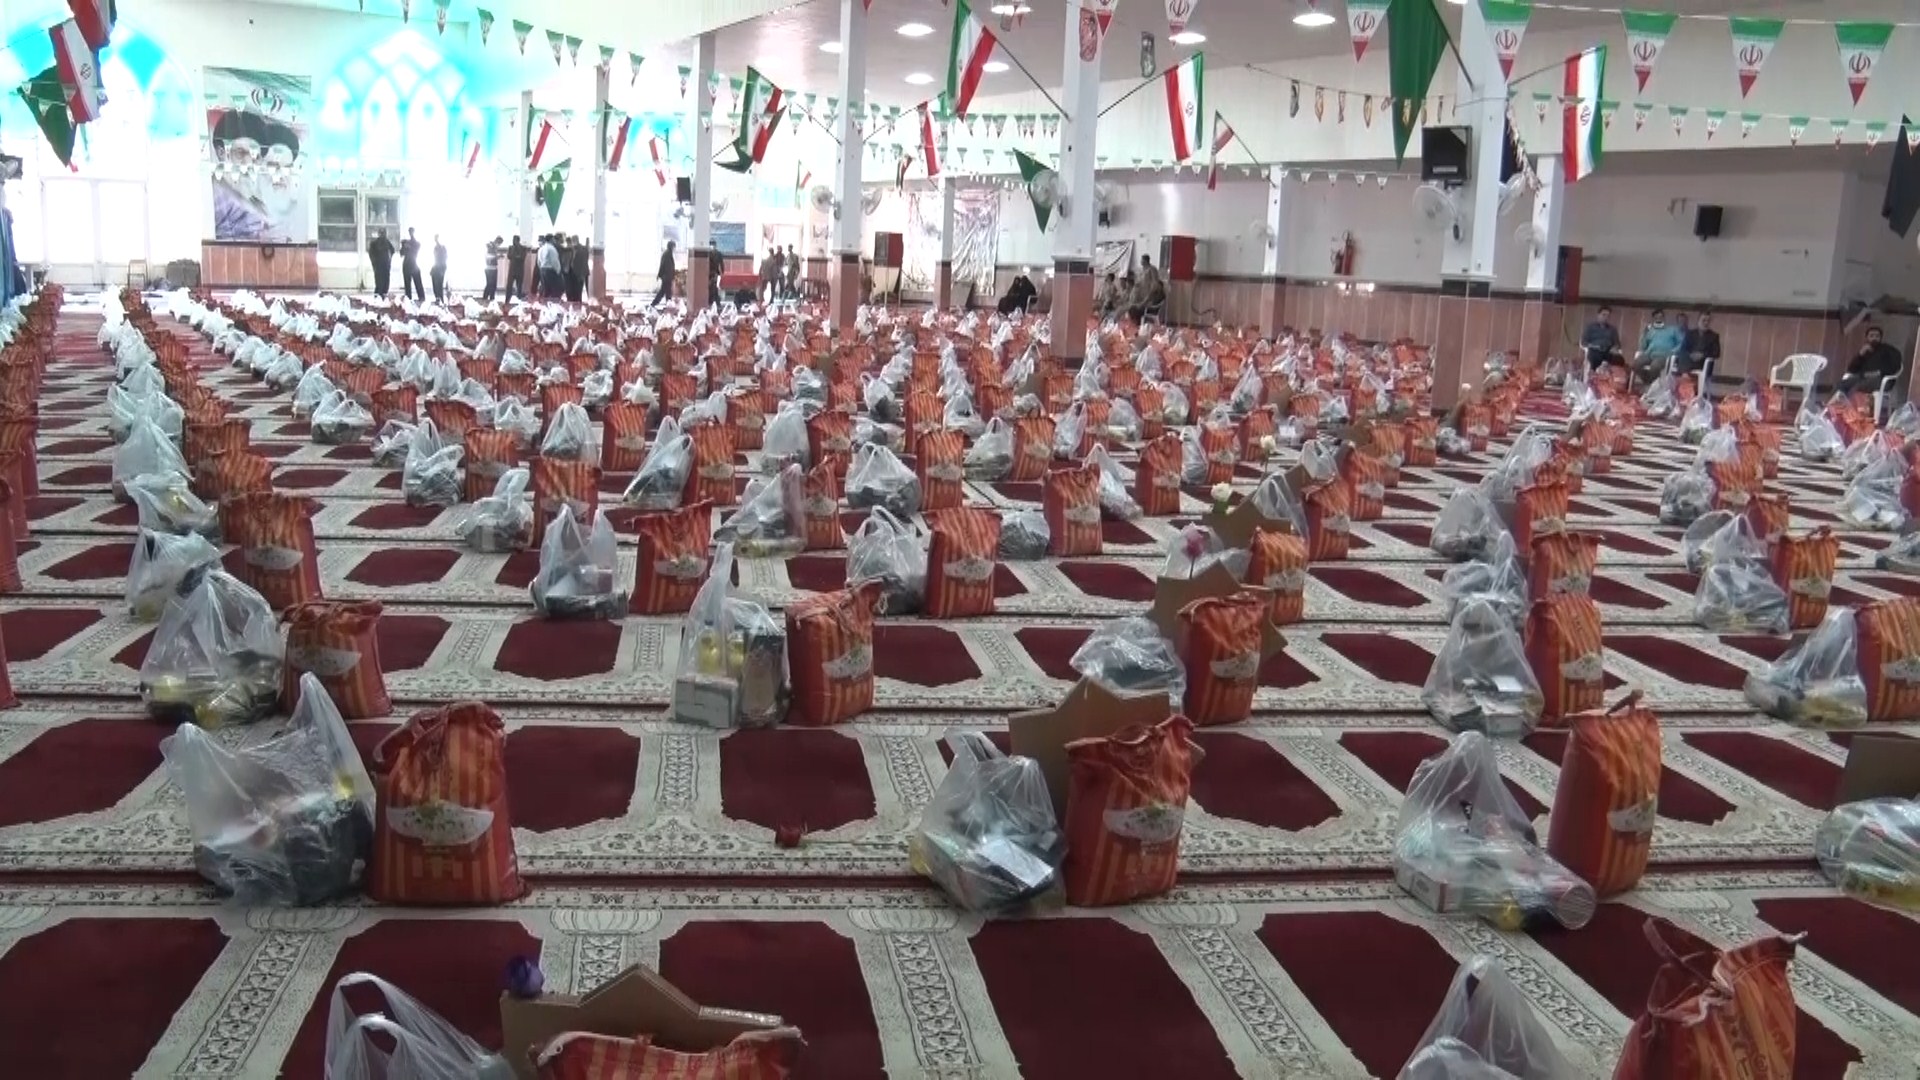 برگزاری رزمایش مواسات و همدلی رمضان در مرکز فرهنگی قرآنی جامعه بیت الزهرا (س)آران و بیدگل